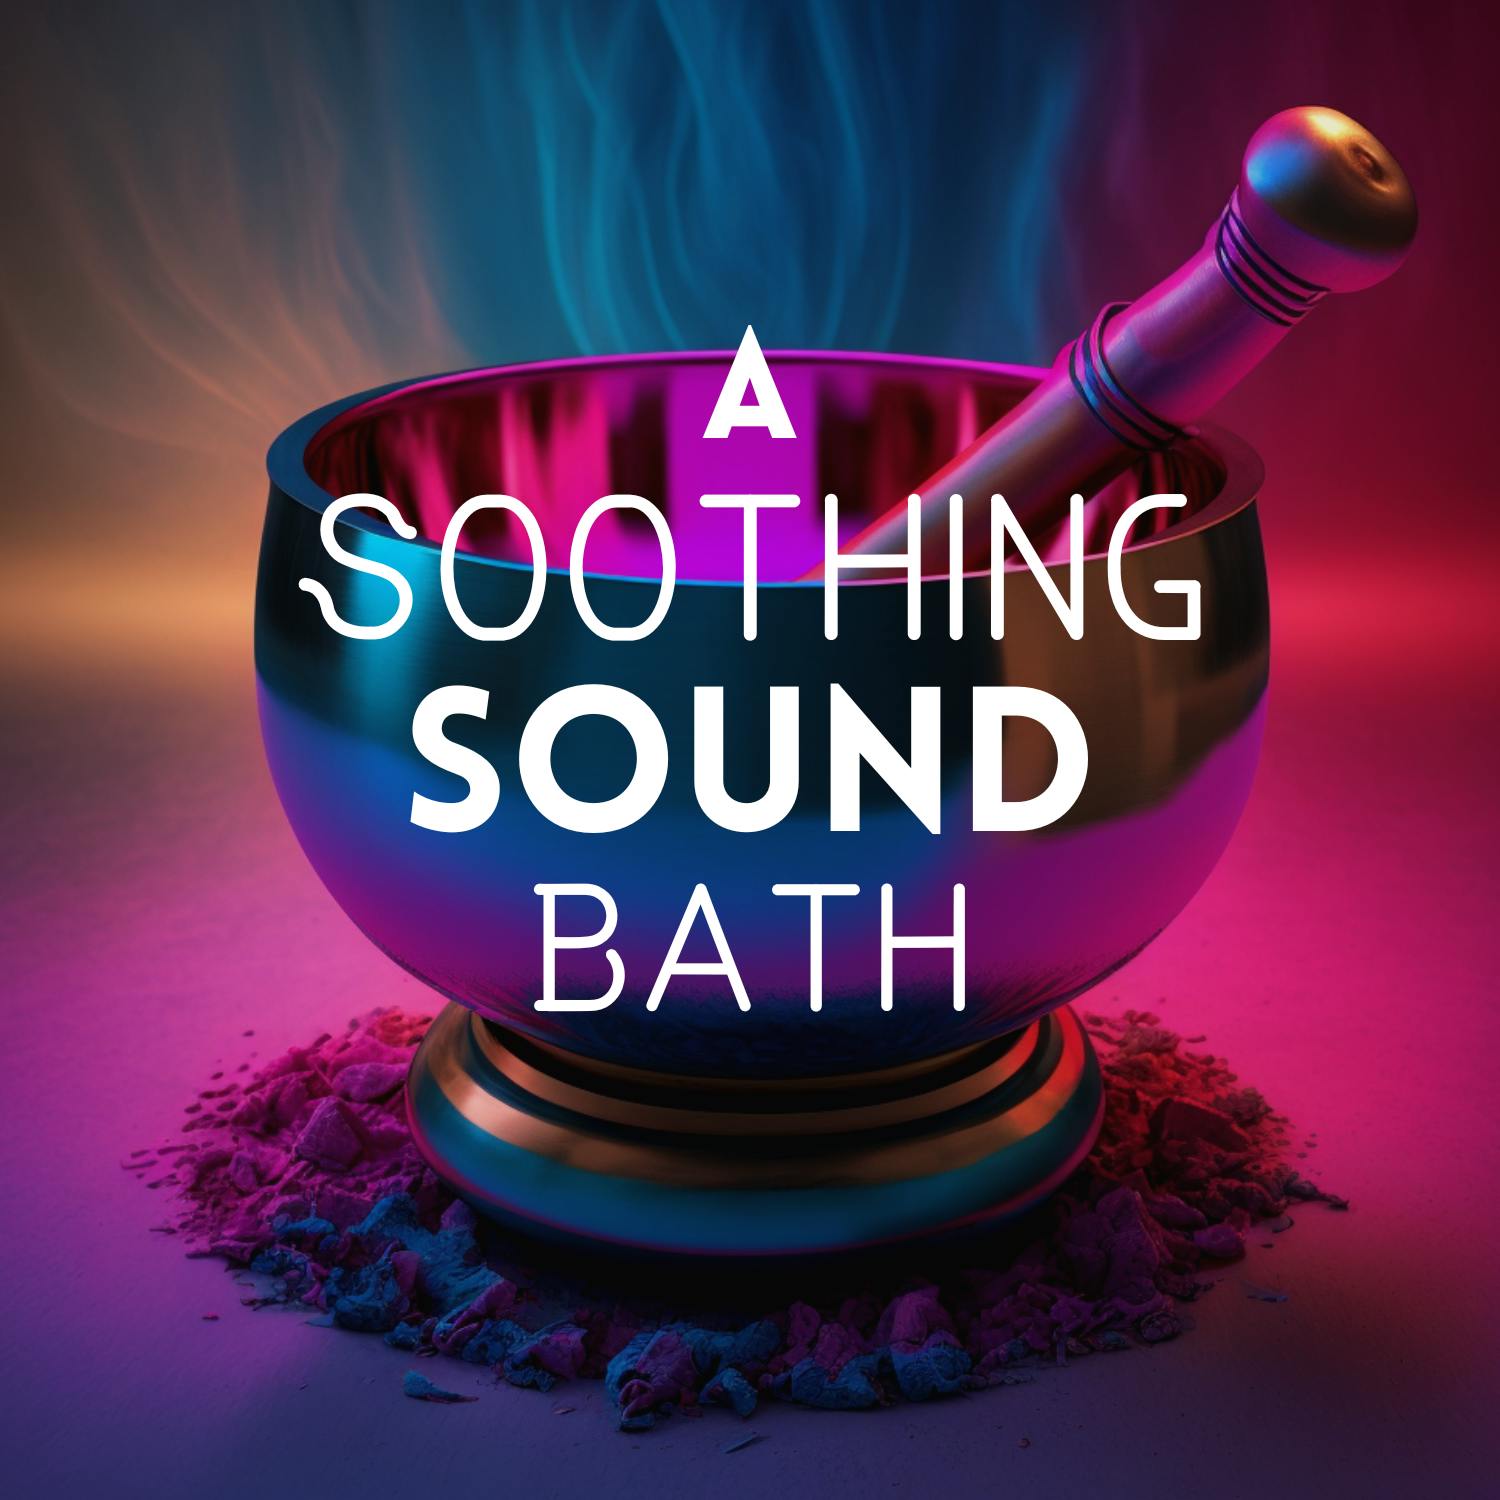 A Soothing Sound Bath